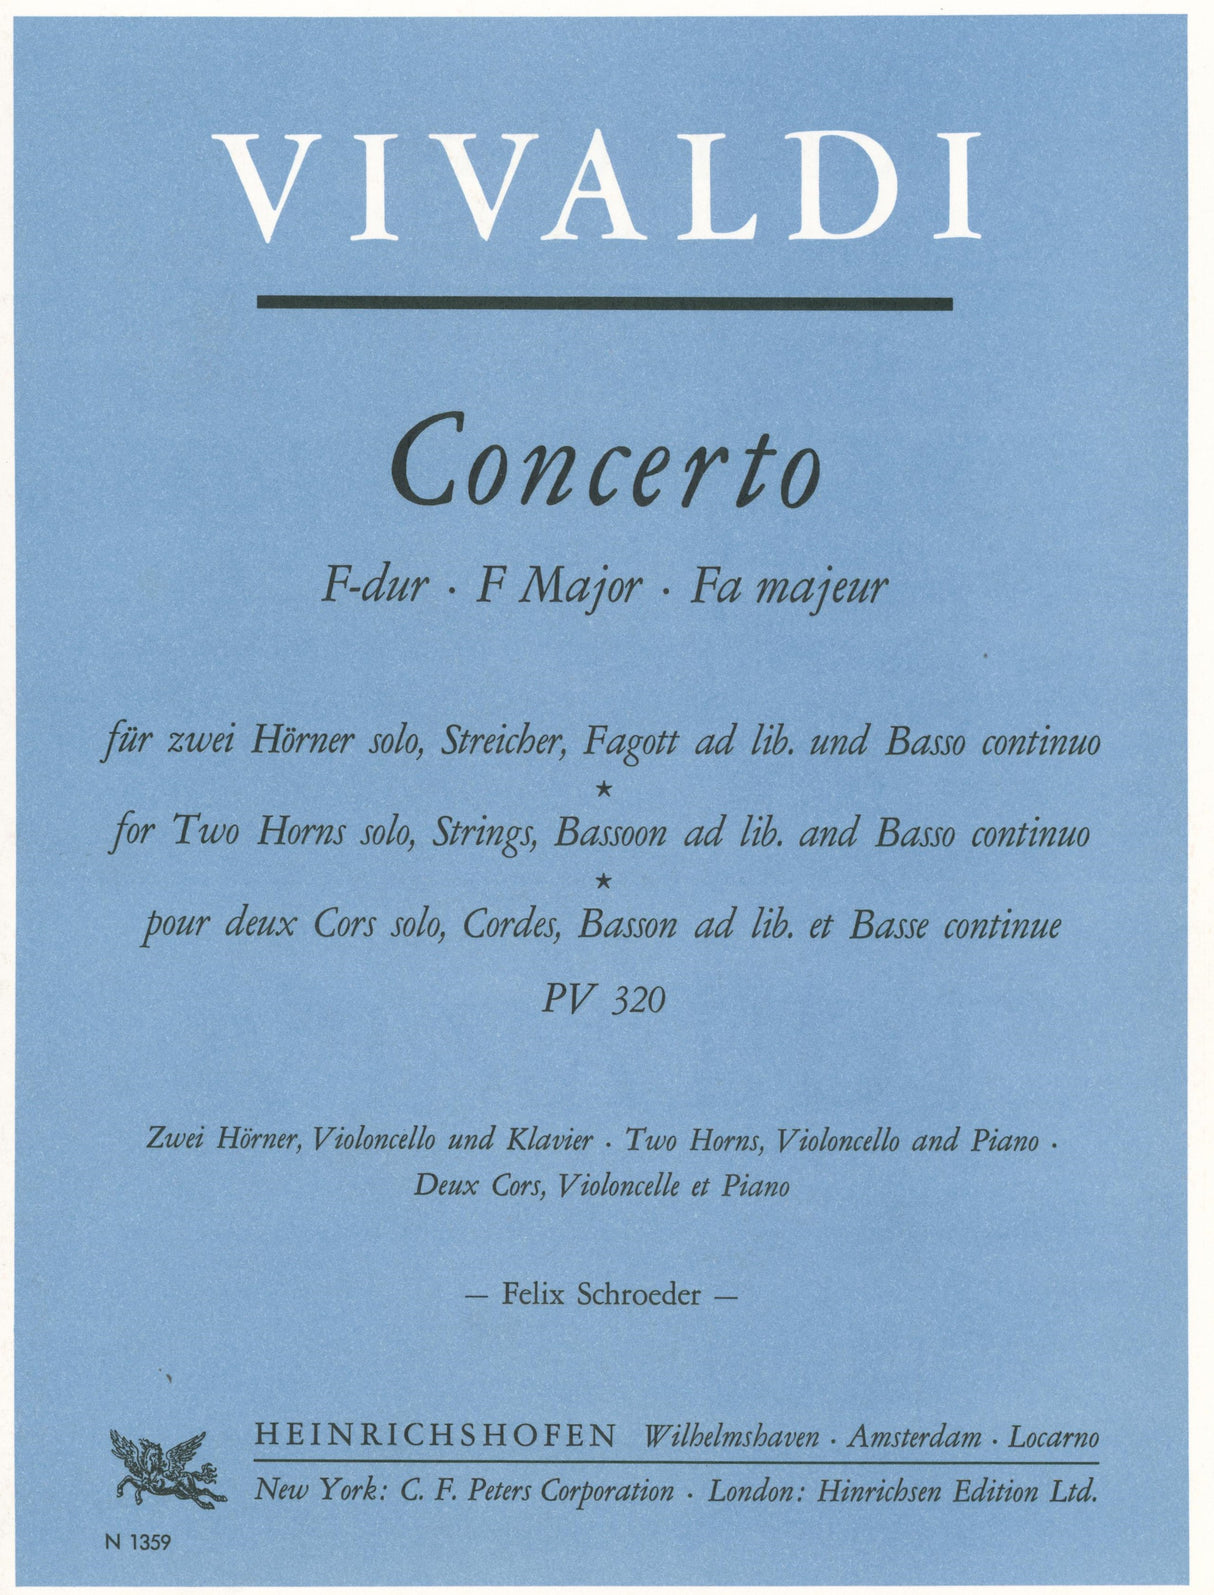 Vivaldi: Concerto for 2 Horns in F Major, RV 538